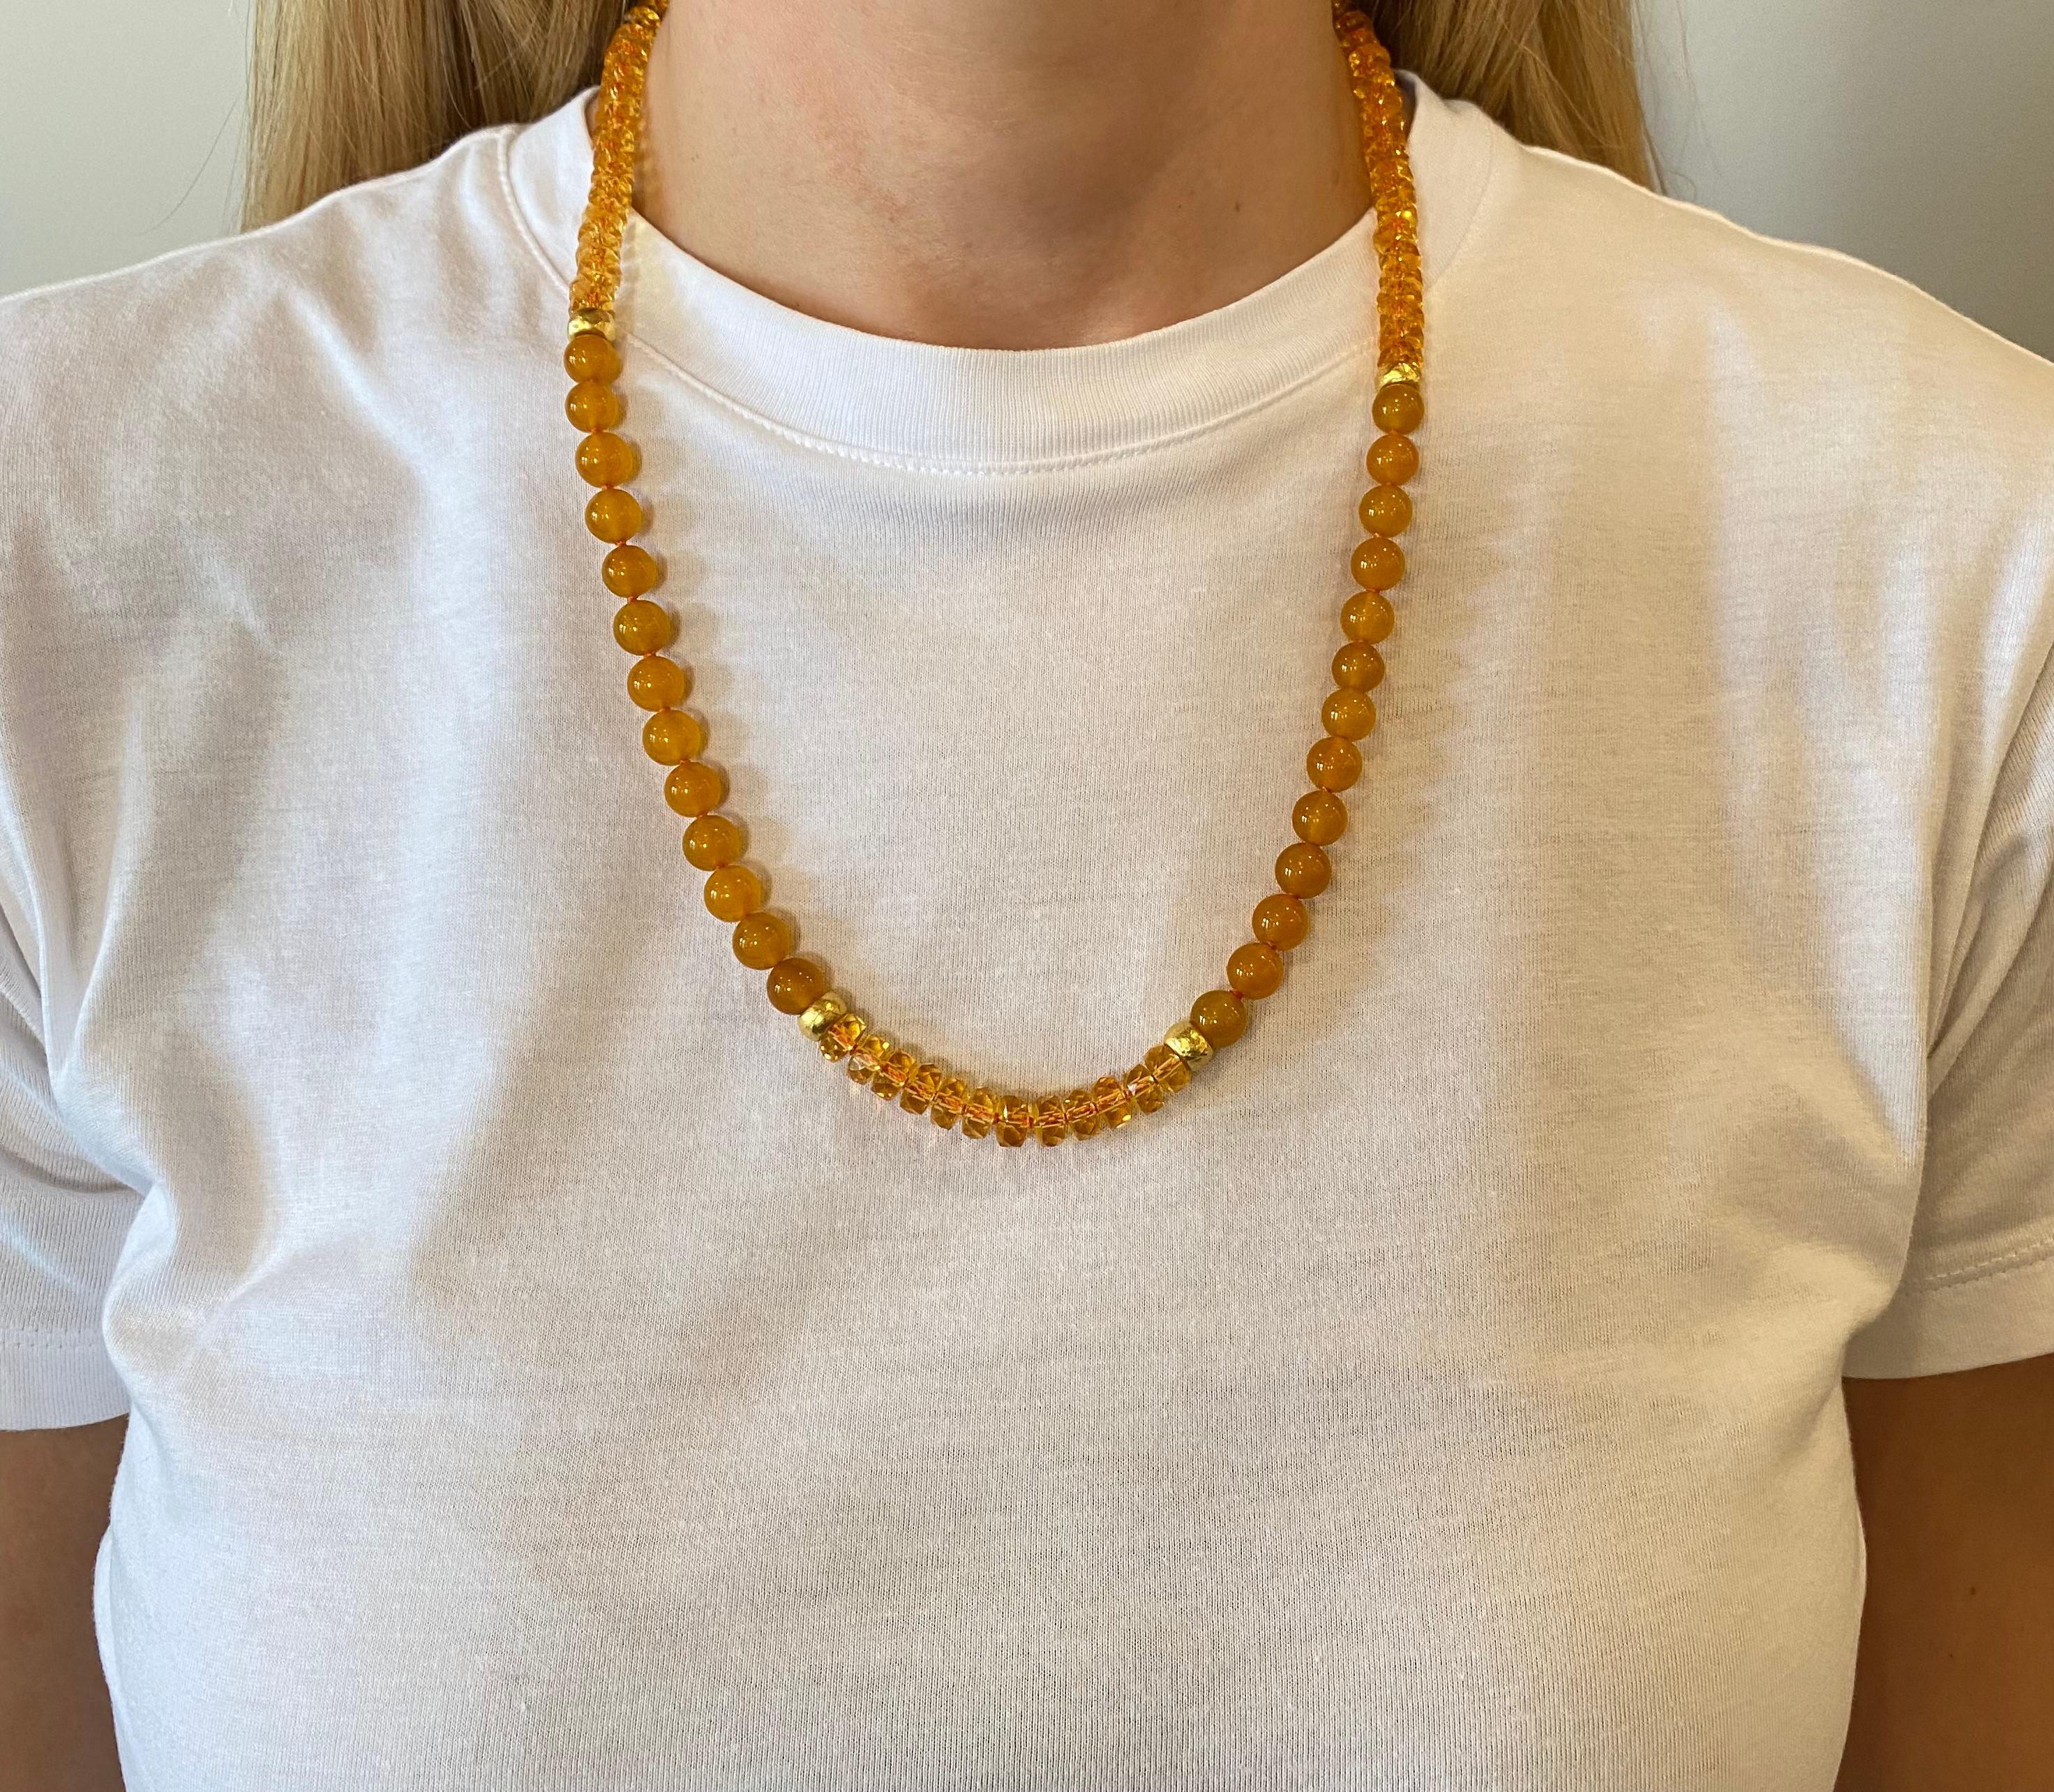 Der einzige Ort, an dem Sie Mala-Halsketten von Fine Jewelry finden, die für Gebets- und Meditationspraktiken verwendet werden. Manche Leute nennen sie sogar Yoga-Halsketten, um einen bewussten Lebensstil auszudrücken. Kiersten Elizabeth verwendet